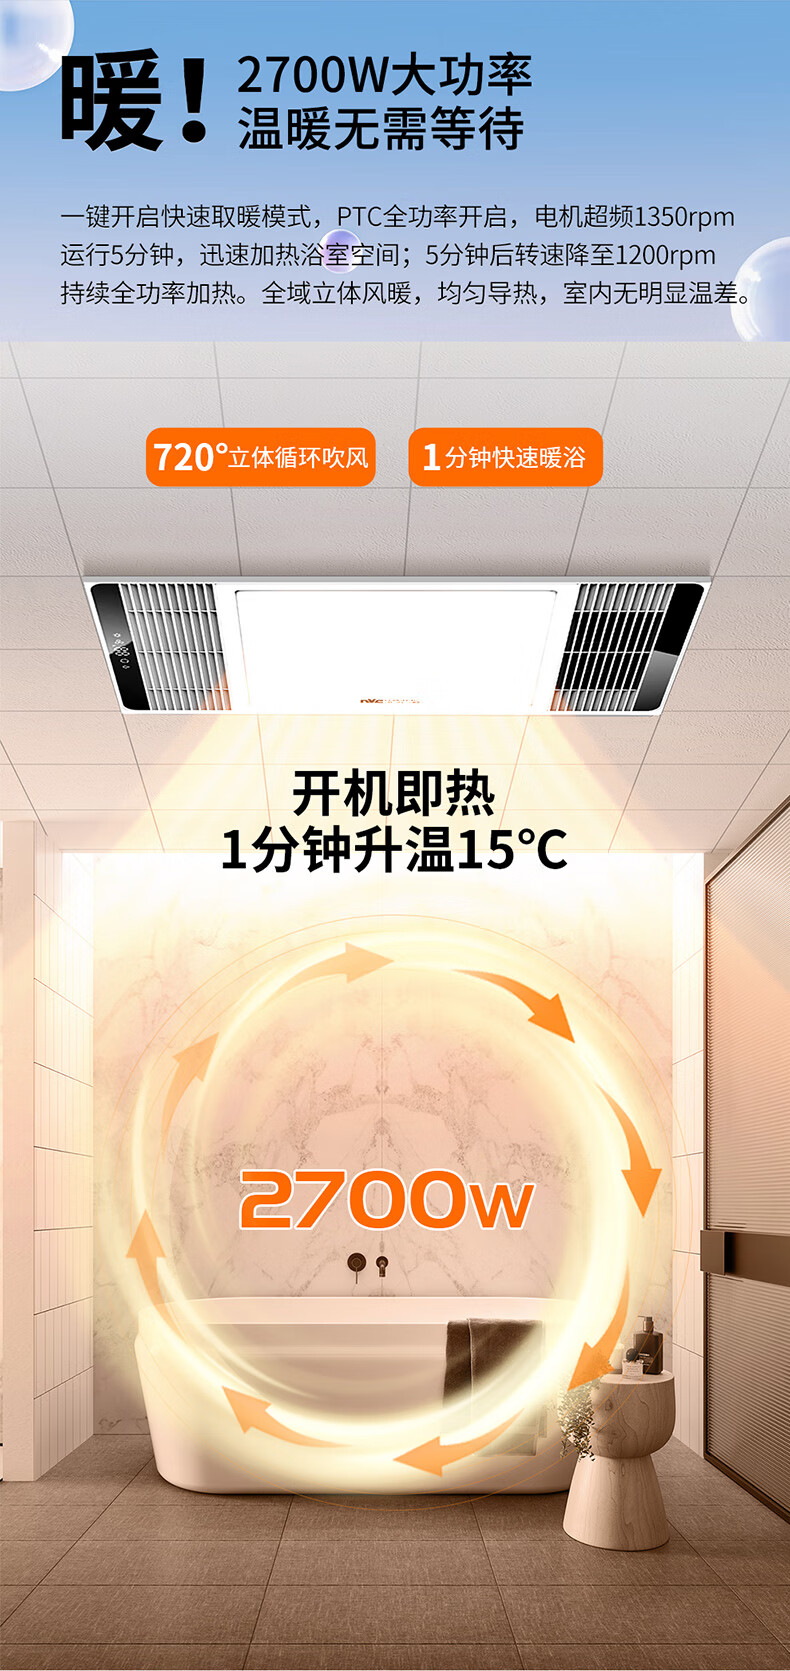 雷士（NVC）智能轻触风暖浴霸 超宽风口 双核强暖 LED照明数显浴室暖风取暖器 纤薄款节省空间 适用集成吊顶